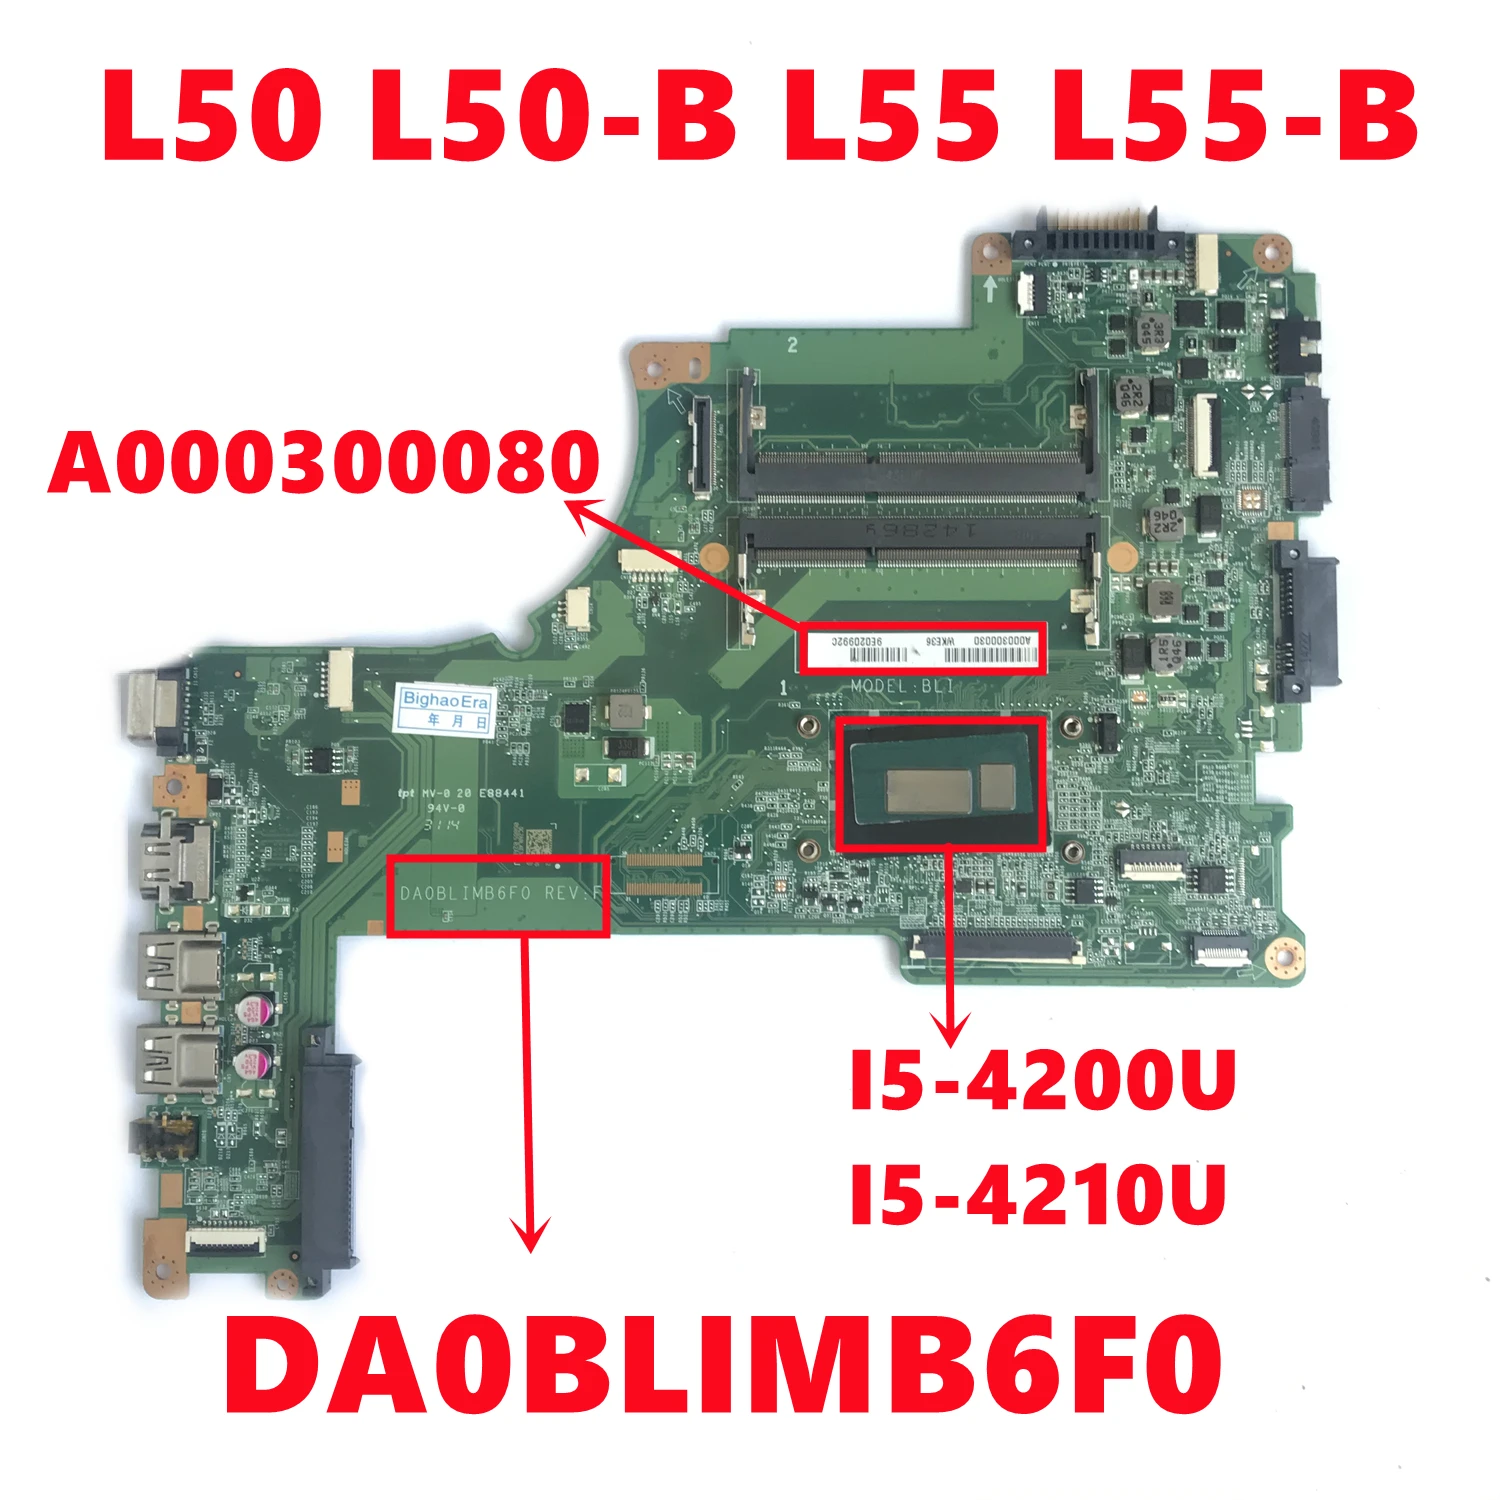 Материнская плата A000300080 для ноутбука TOSHIBA Satellite L50 L50-B L55 системная DA0BLIMB6F0 с детской